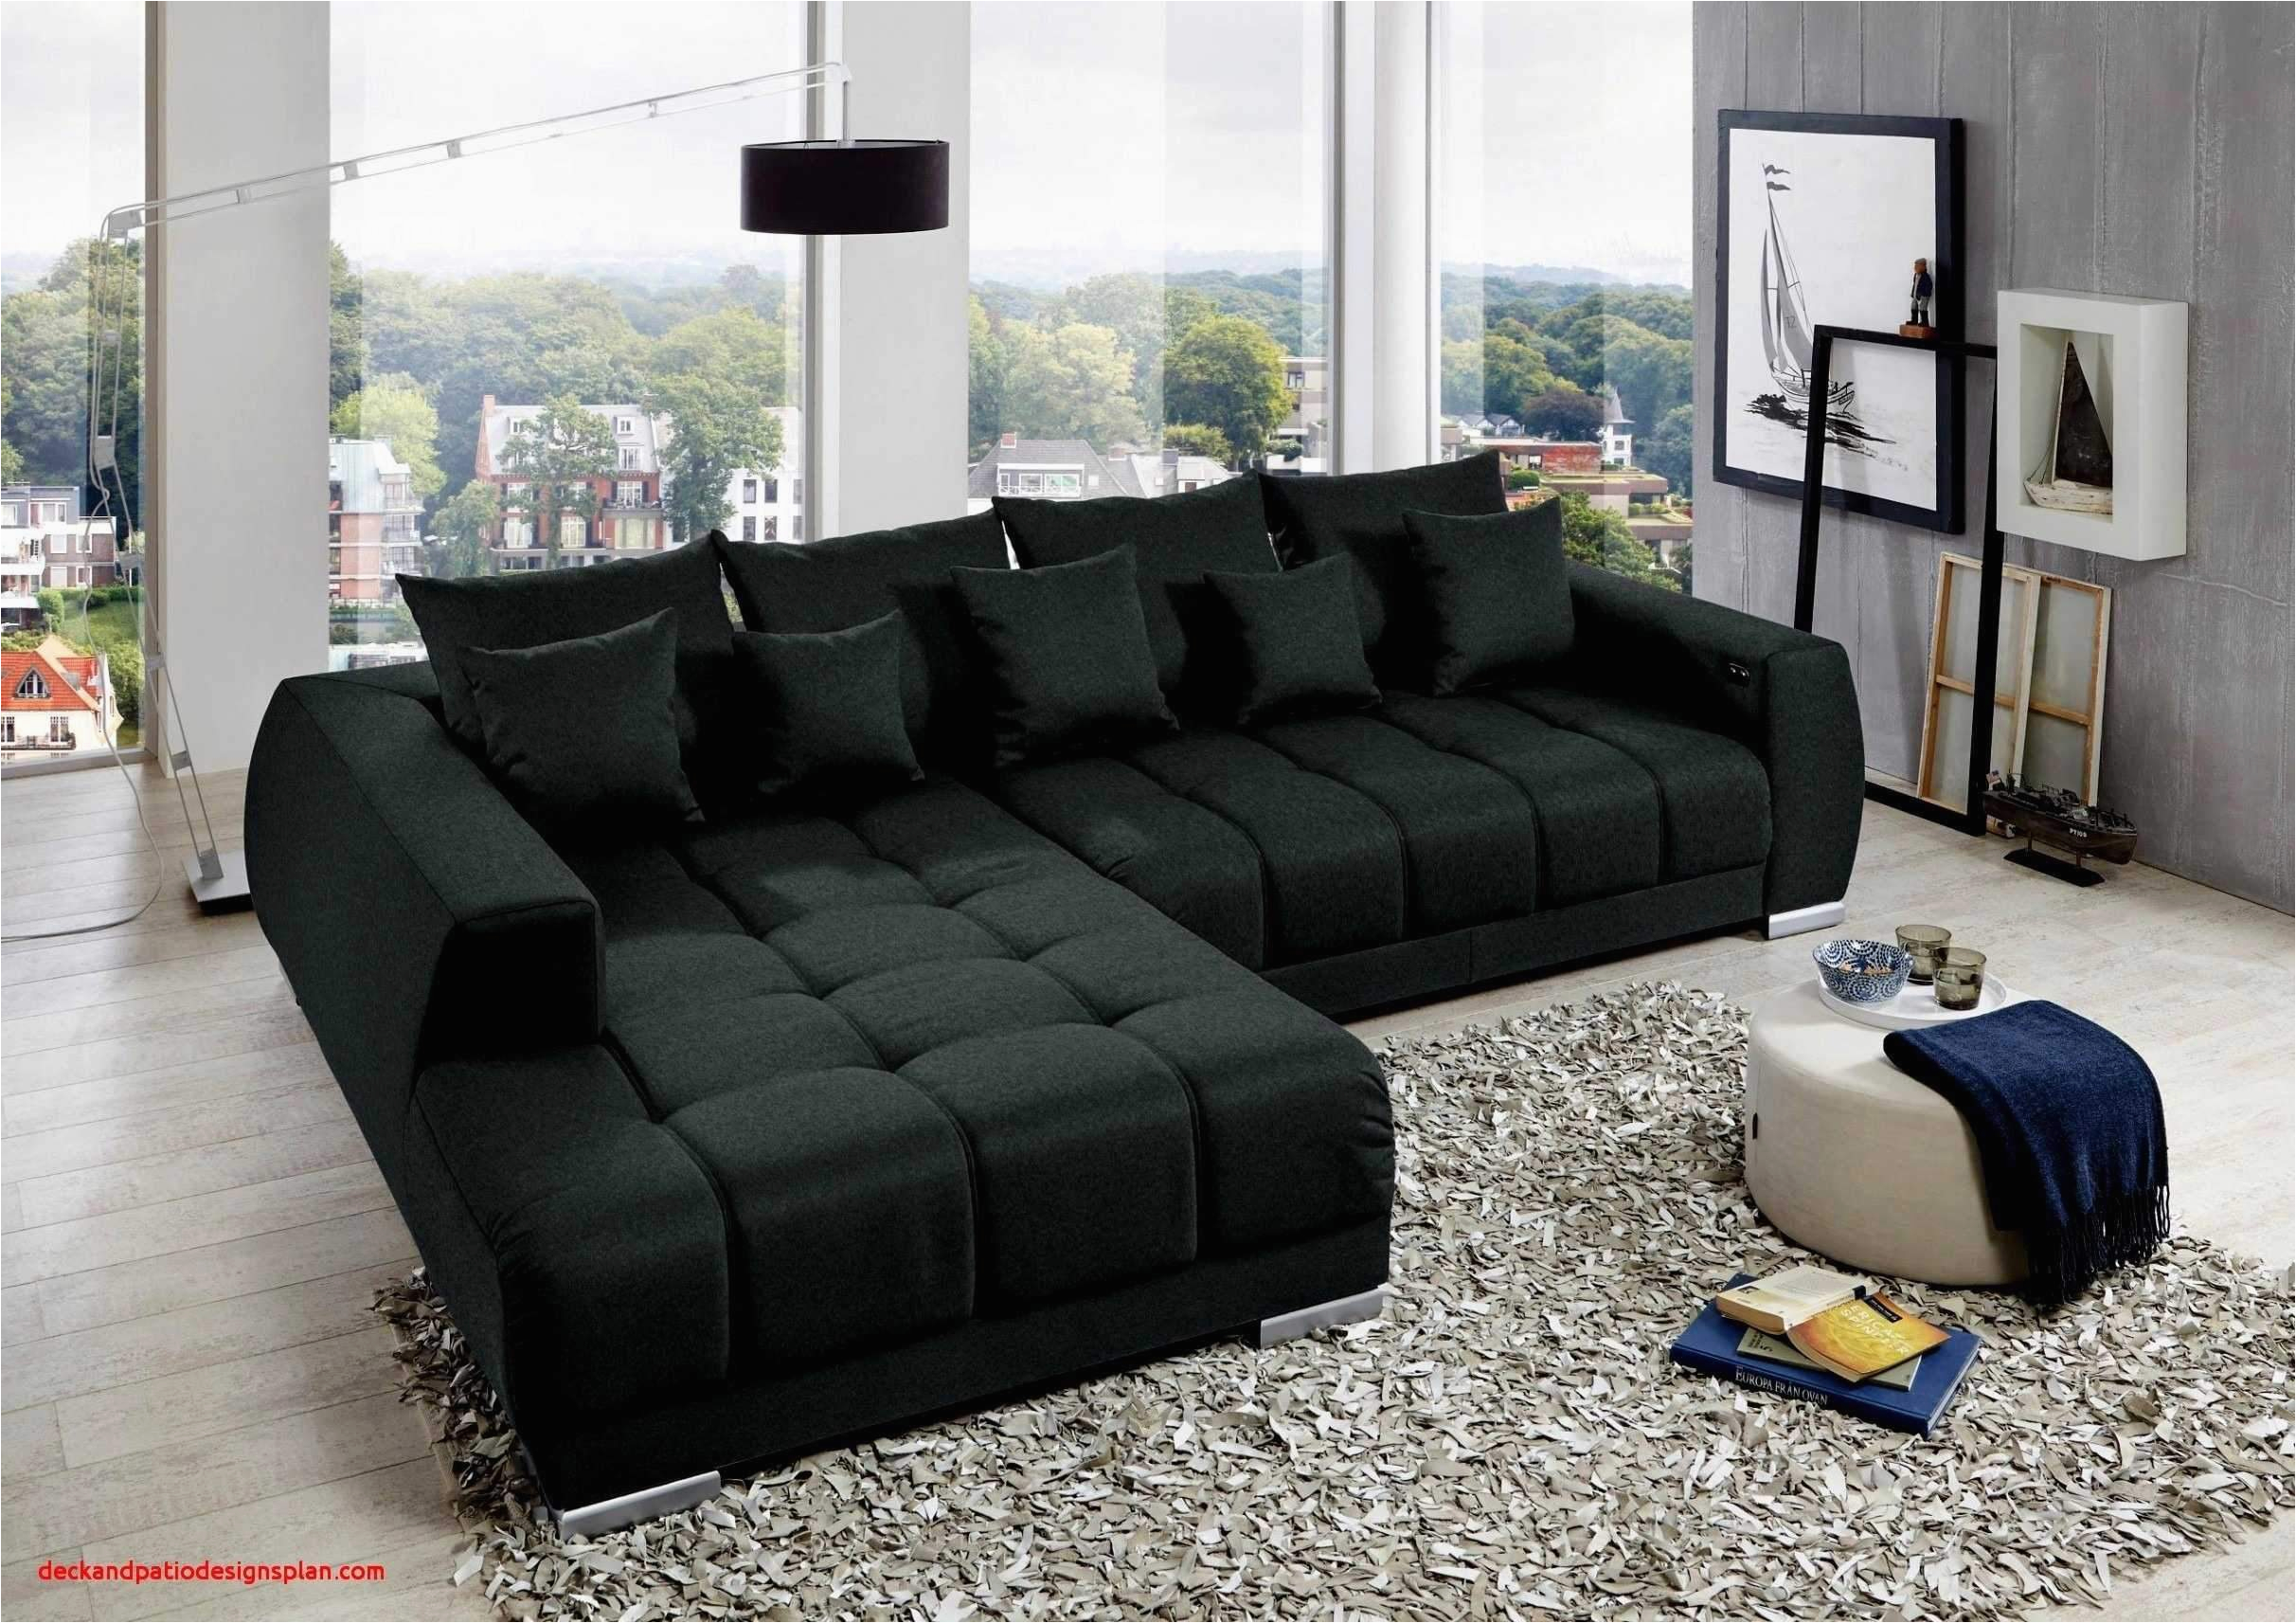 Wohnzimmer sofas Leder Wohnzimmer Couch Leder Luxus Wohnzimmer Couch Leder Elegant